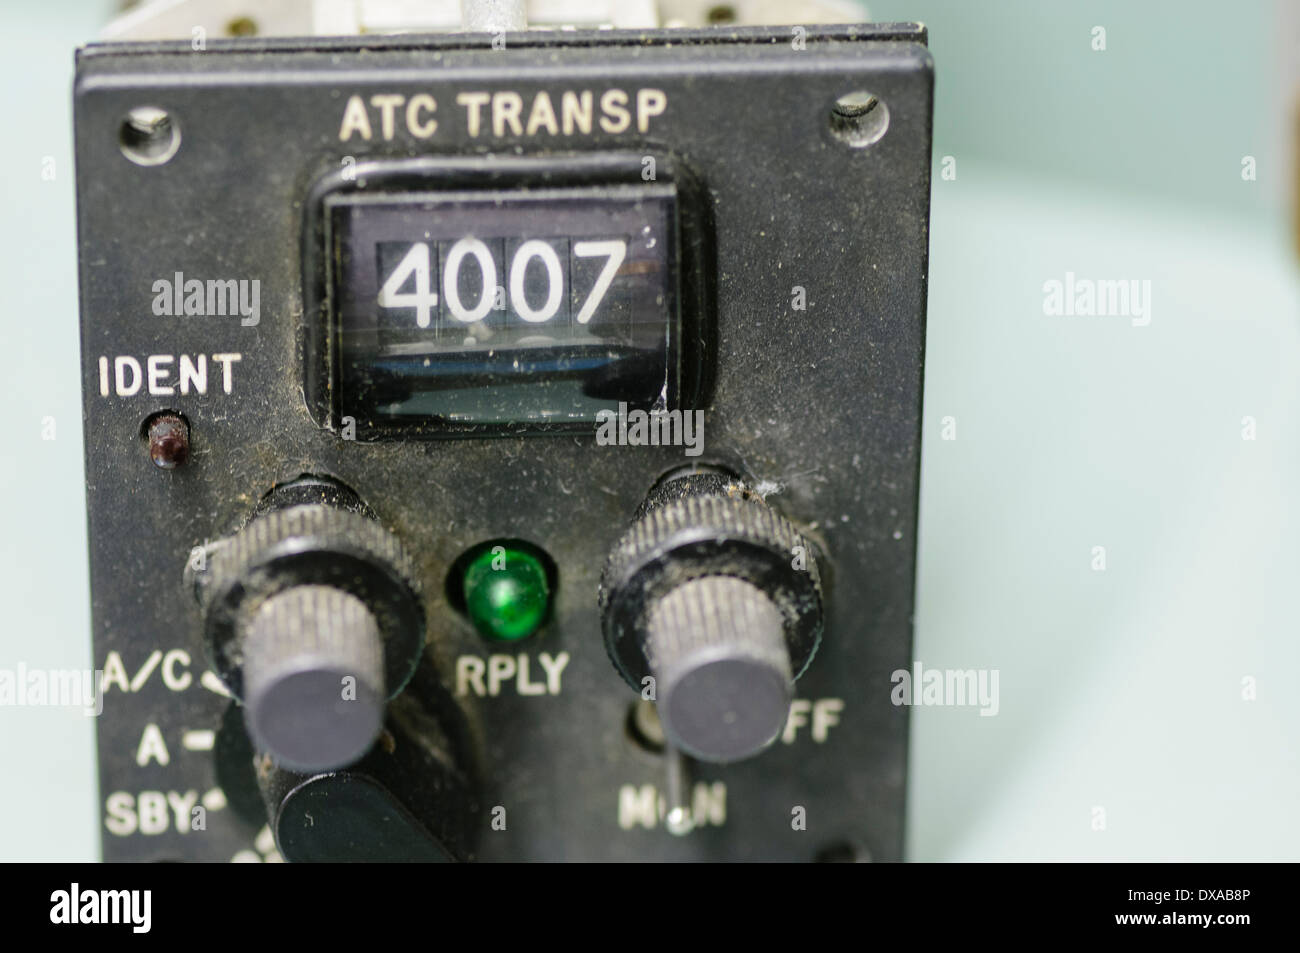 Transpondeur ATC à partir d'un panneau de commande de l'appareil. Banque D'Images